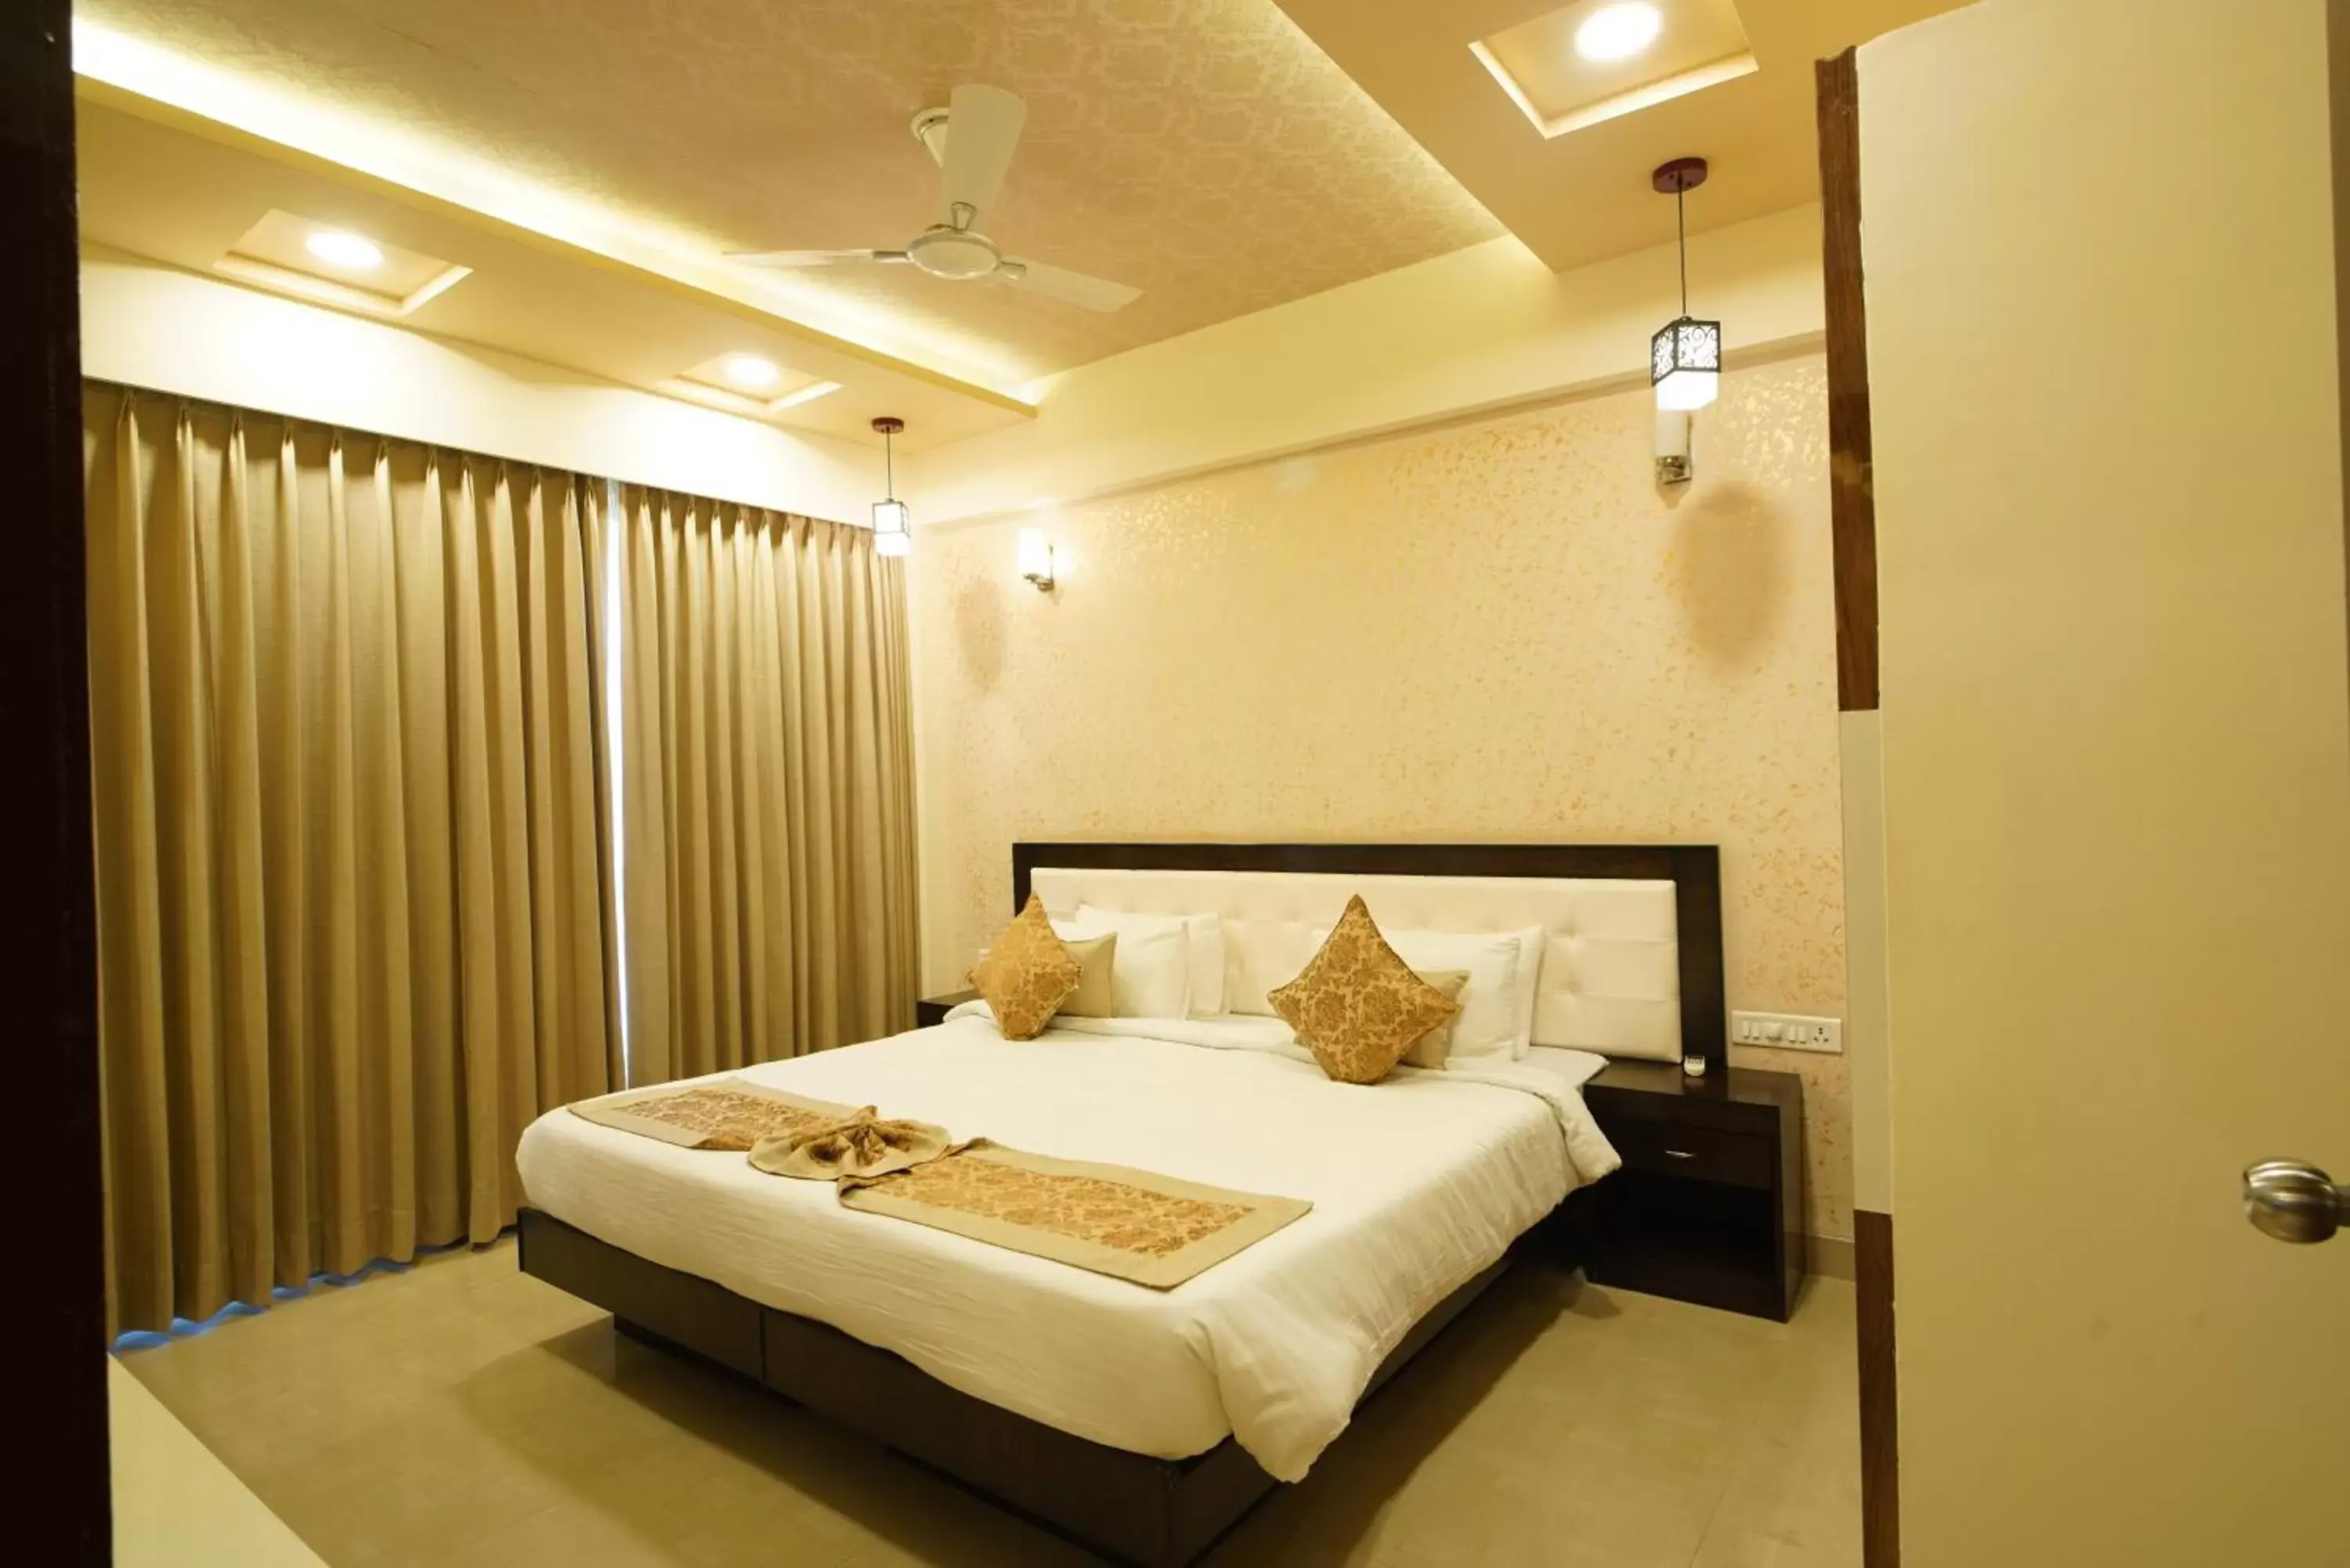 Bedroom, Bed in Spectrum Resort & Spa